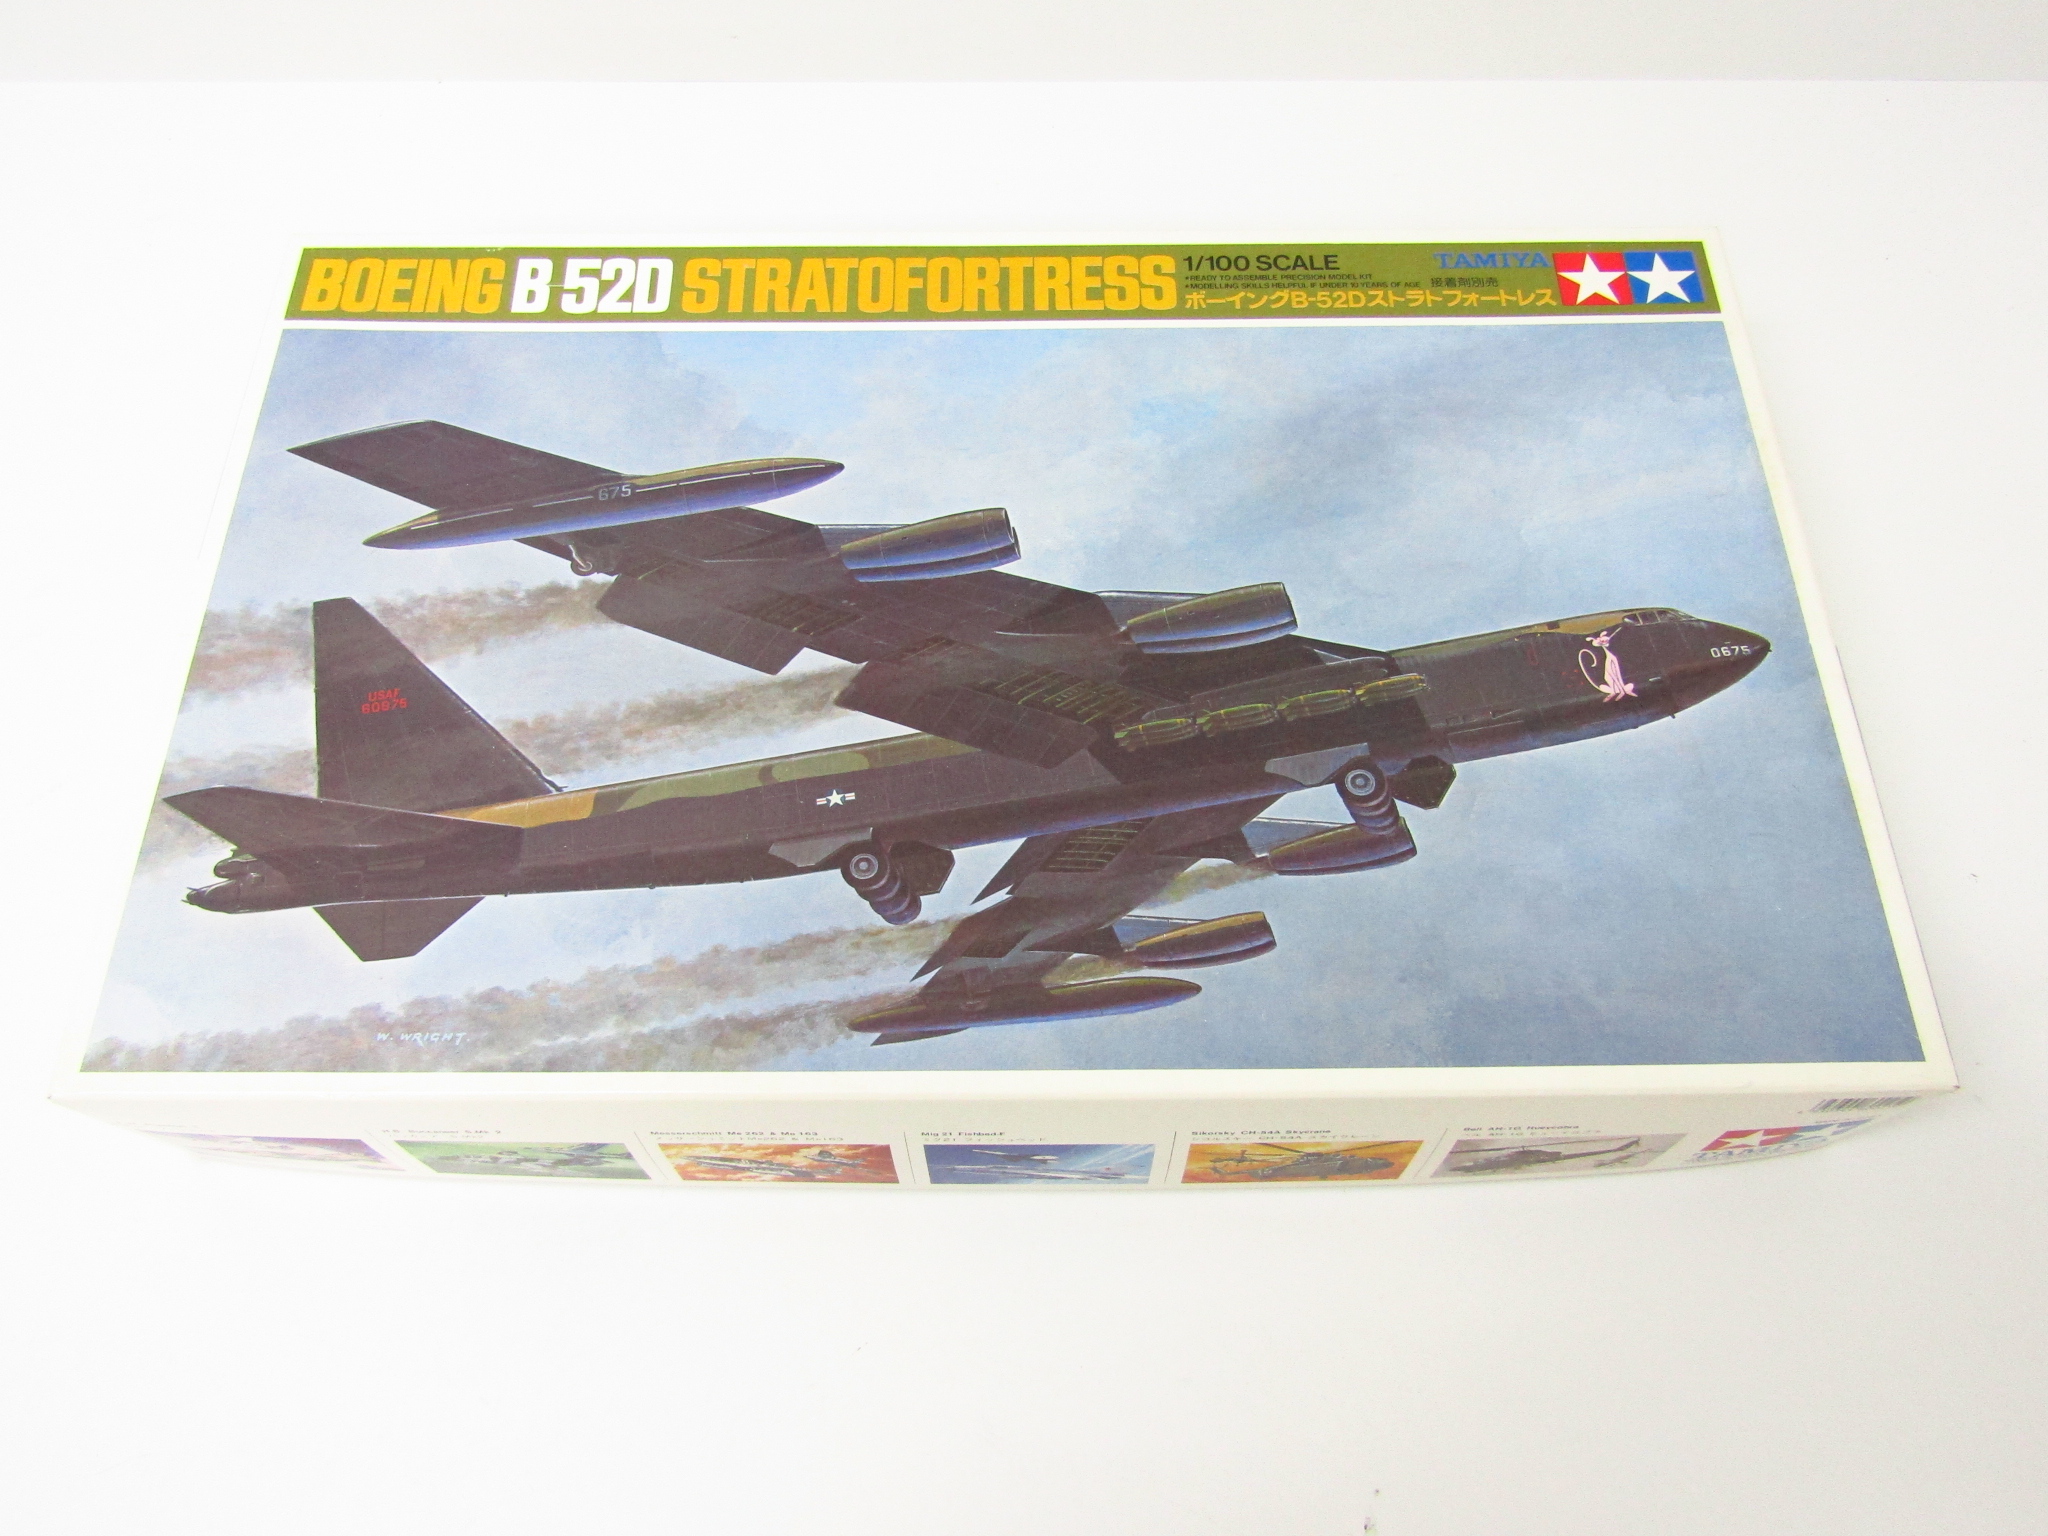 タミヤ ボーイング B-52D ストラトフォートレス（1/100スケール ミニジェットNo.25 60025） ミリタリー模型の商品画像